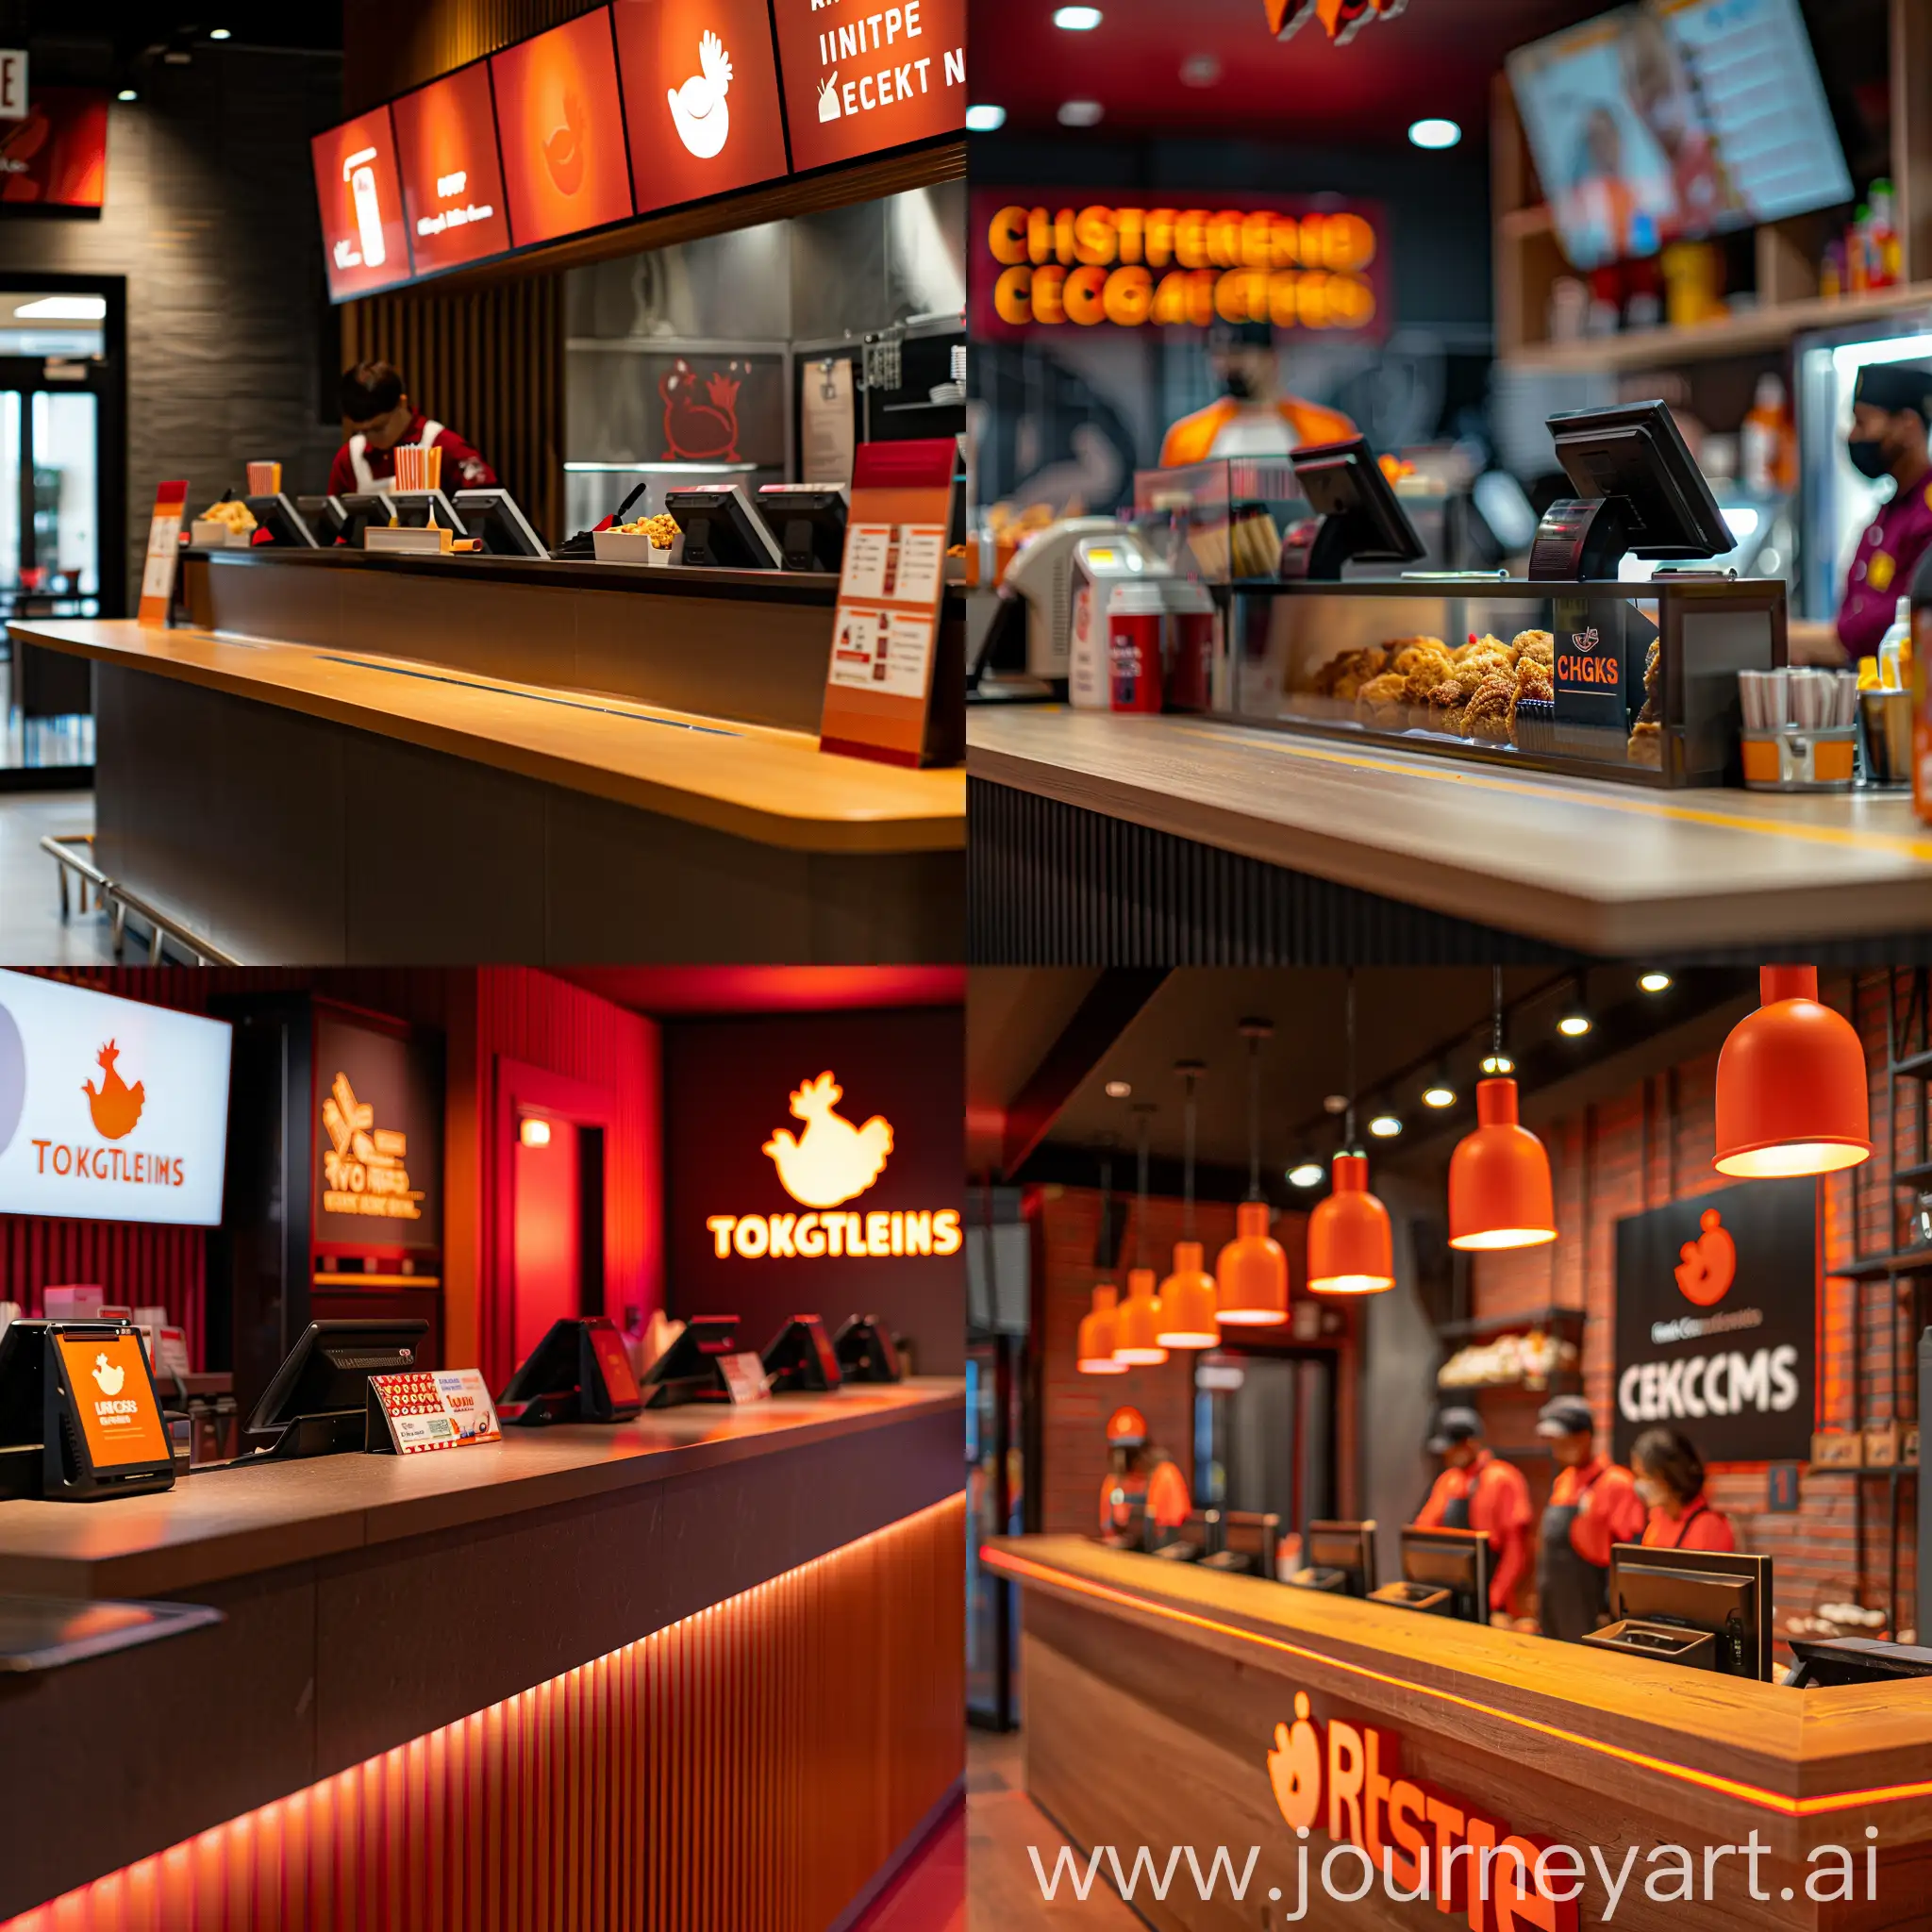 Chicken-Restaurant-Cashier-Desk-Welcoming-Staff-in-Dark-Red-and-Orange-Uniforms-with-Logo-Display